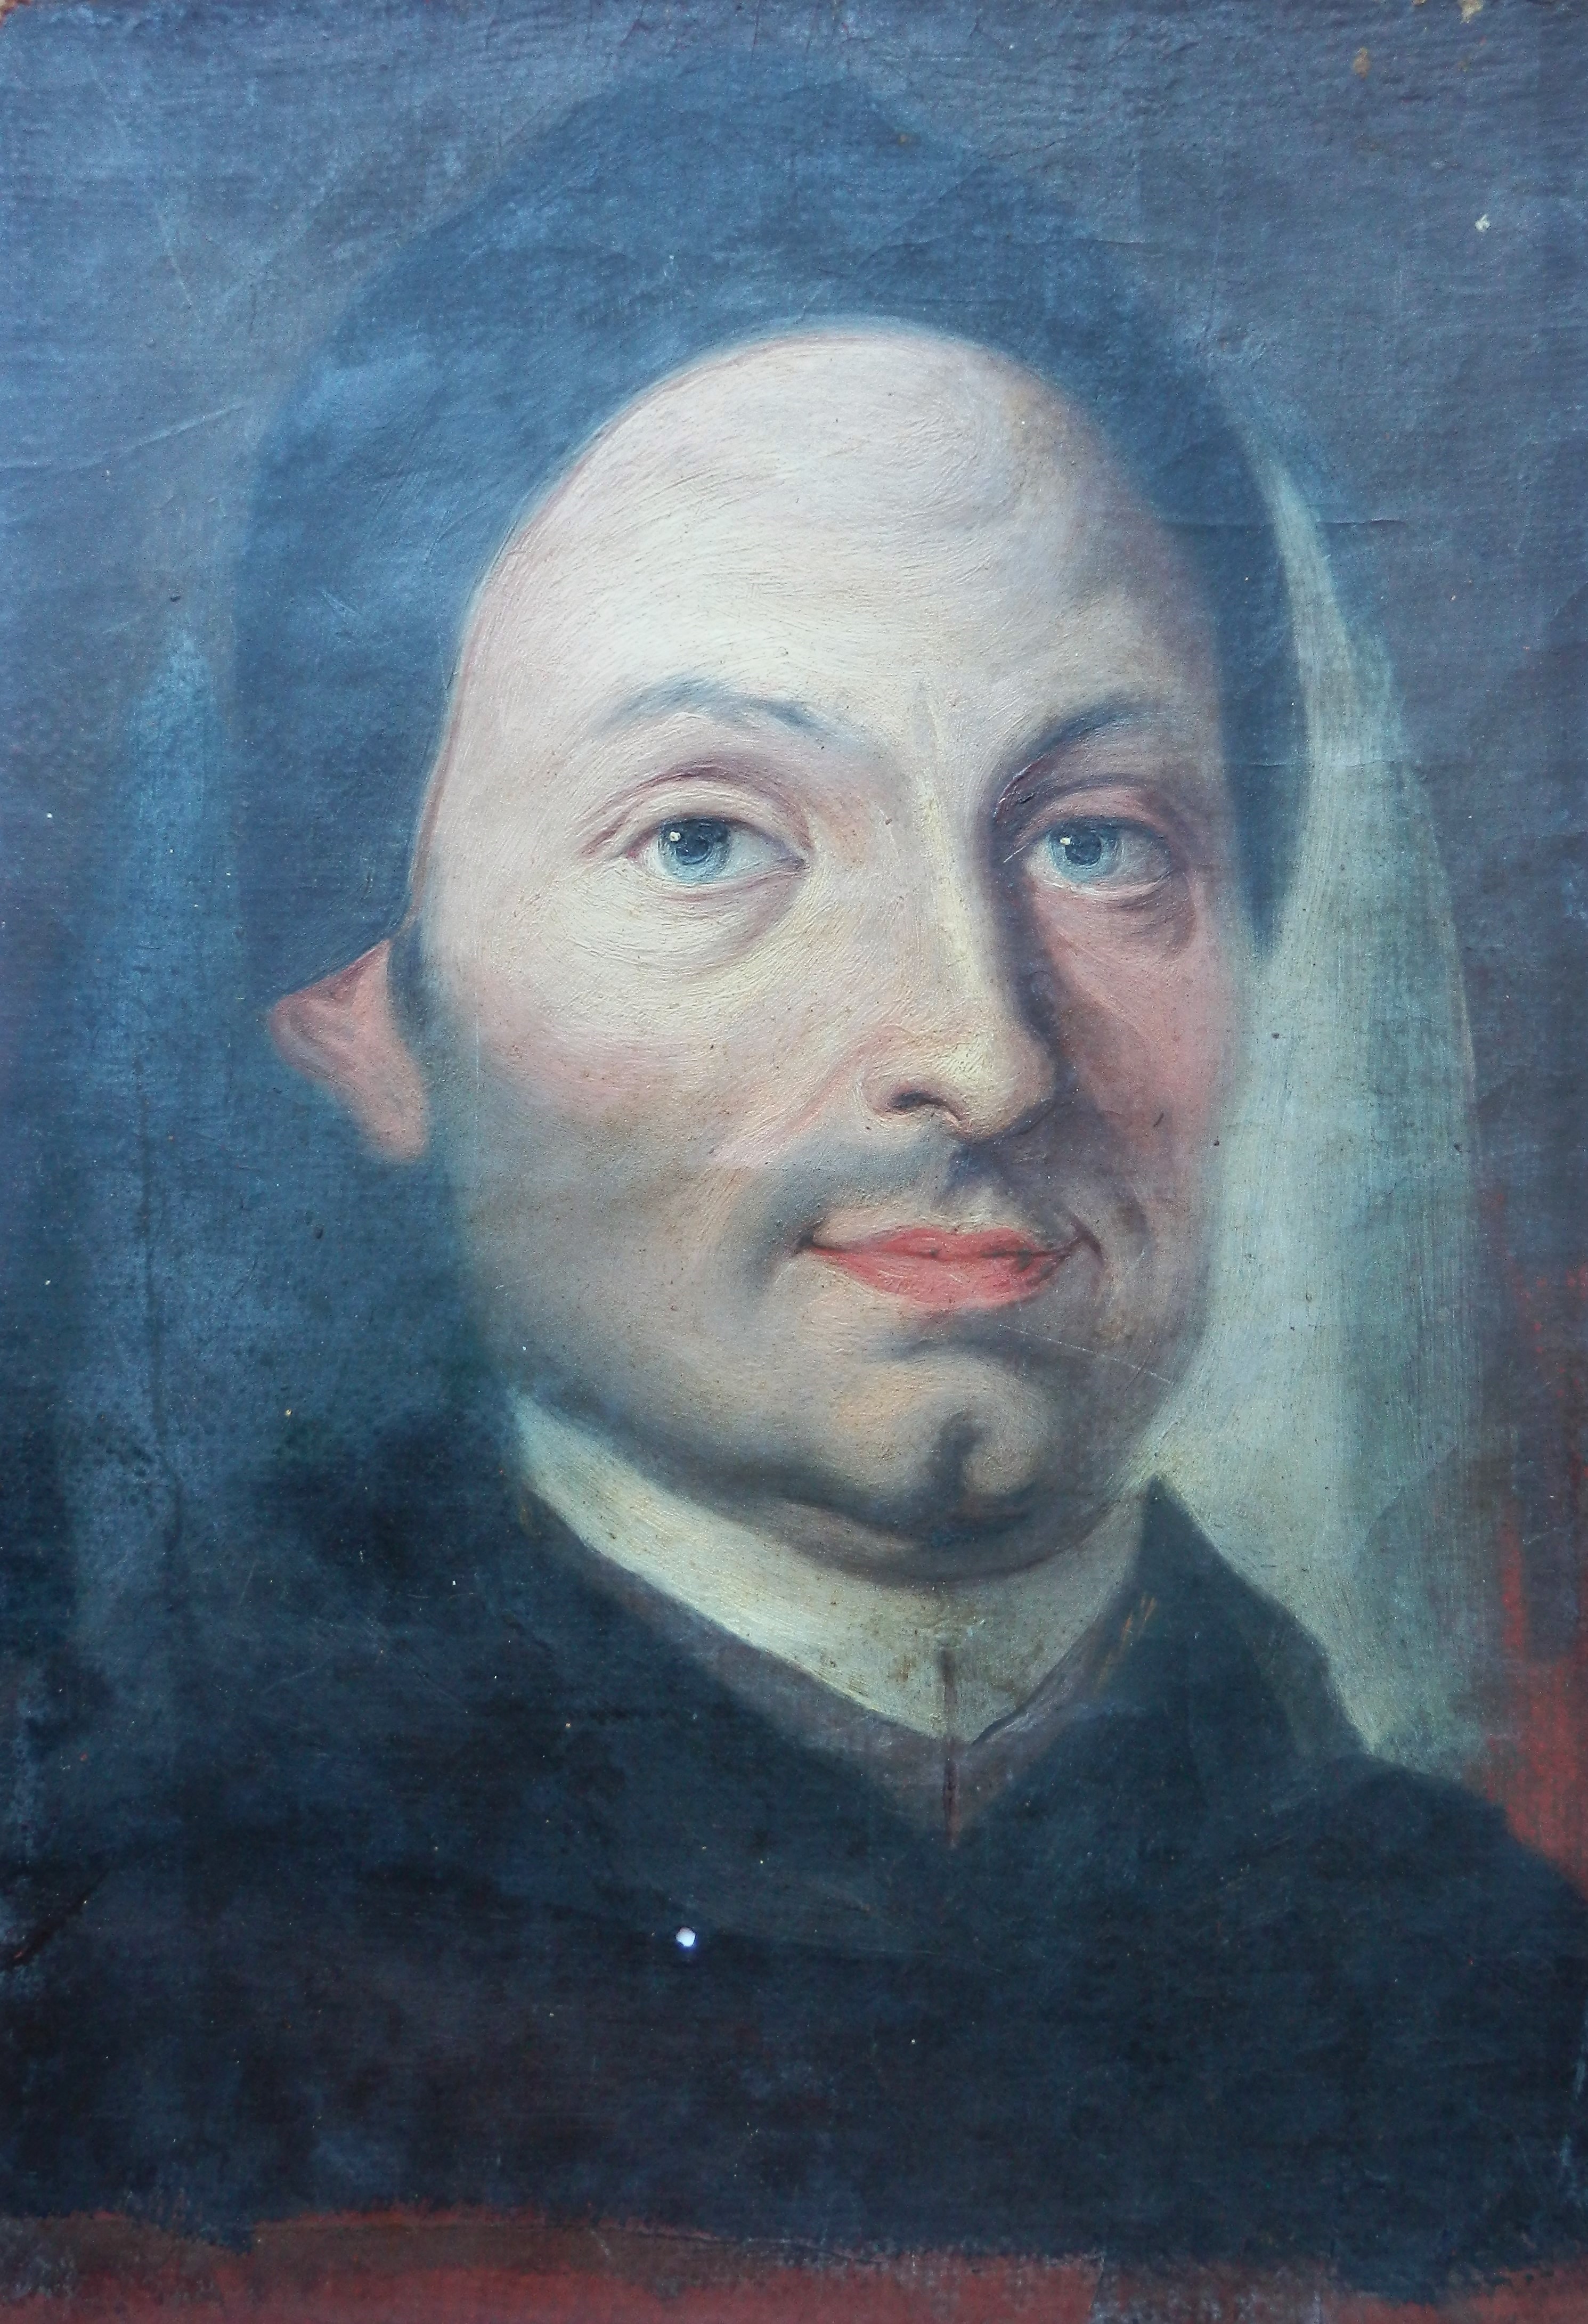 Unbekannter Maler, Porträt eines Geistlichen (Zisterziensers), 18. Jahrhundert, Öl auf Leinwand, Inv.-Nr. 1205. Foto: Dr. Helmuth Oehler, Innsbruck.